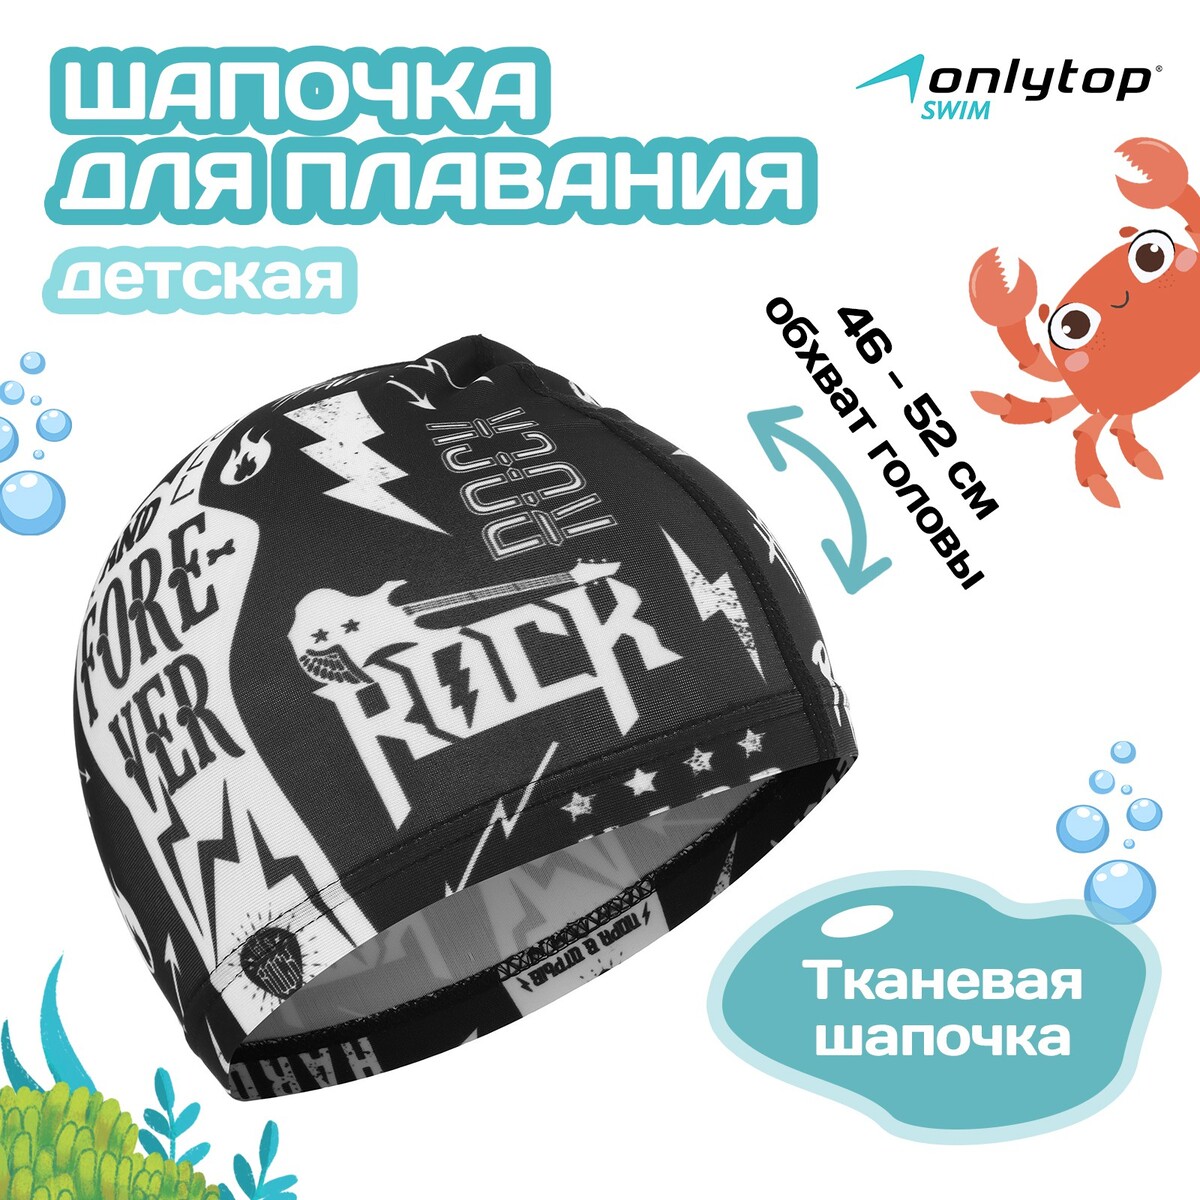 Шапочка для плавания детская rock and roll, тканевая, обхват 46-52 см митьки rock